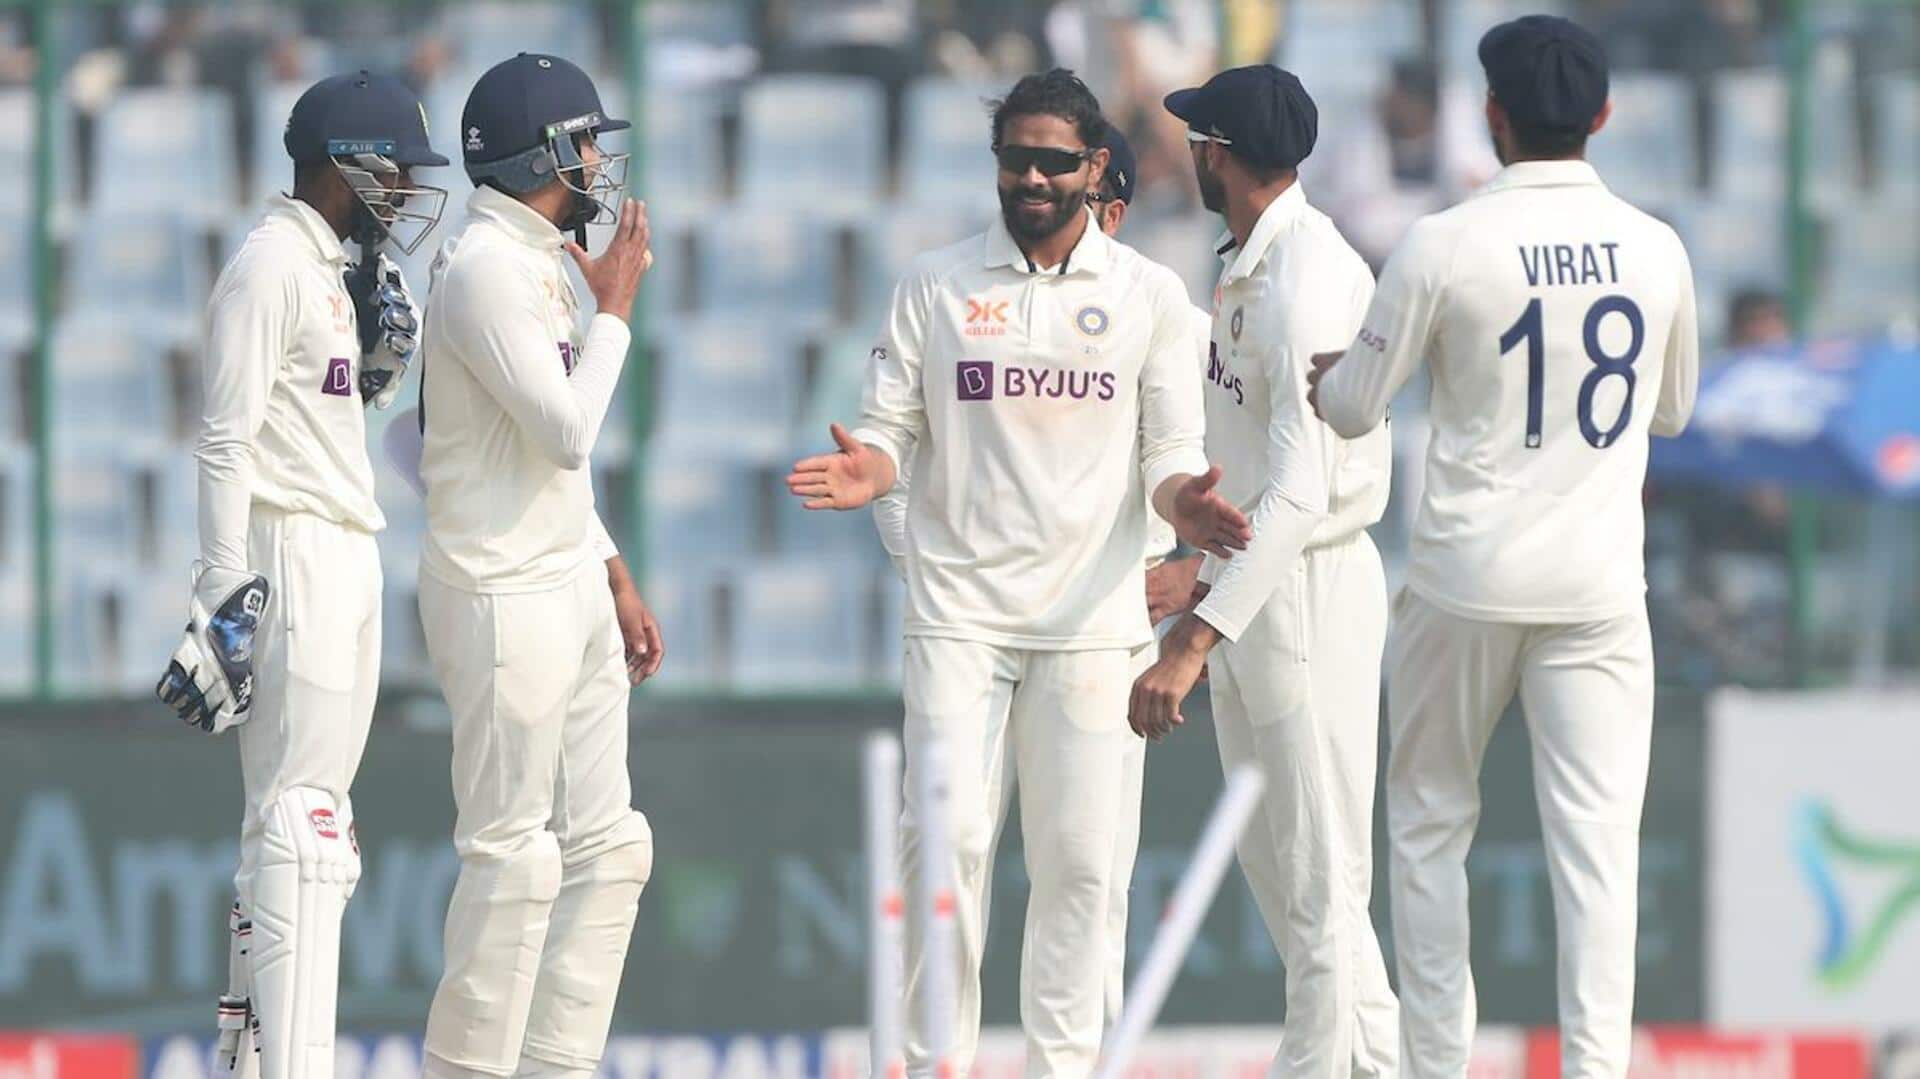 भारत बनाम ऑस्ट्रेलिया: इंदौर में होने वाले तीसरे टेस्ट के सभी टिकट बिके